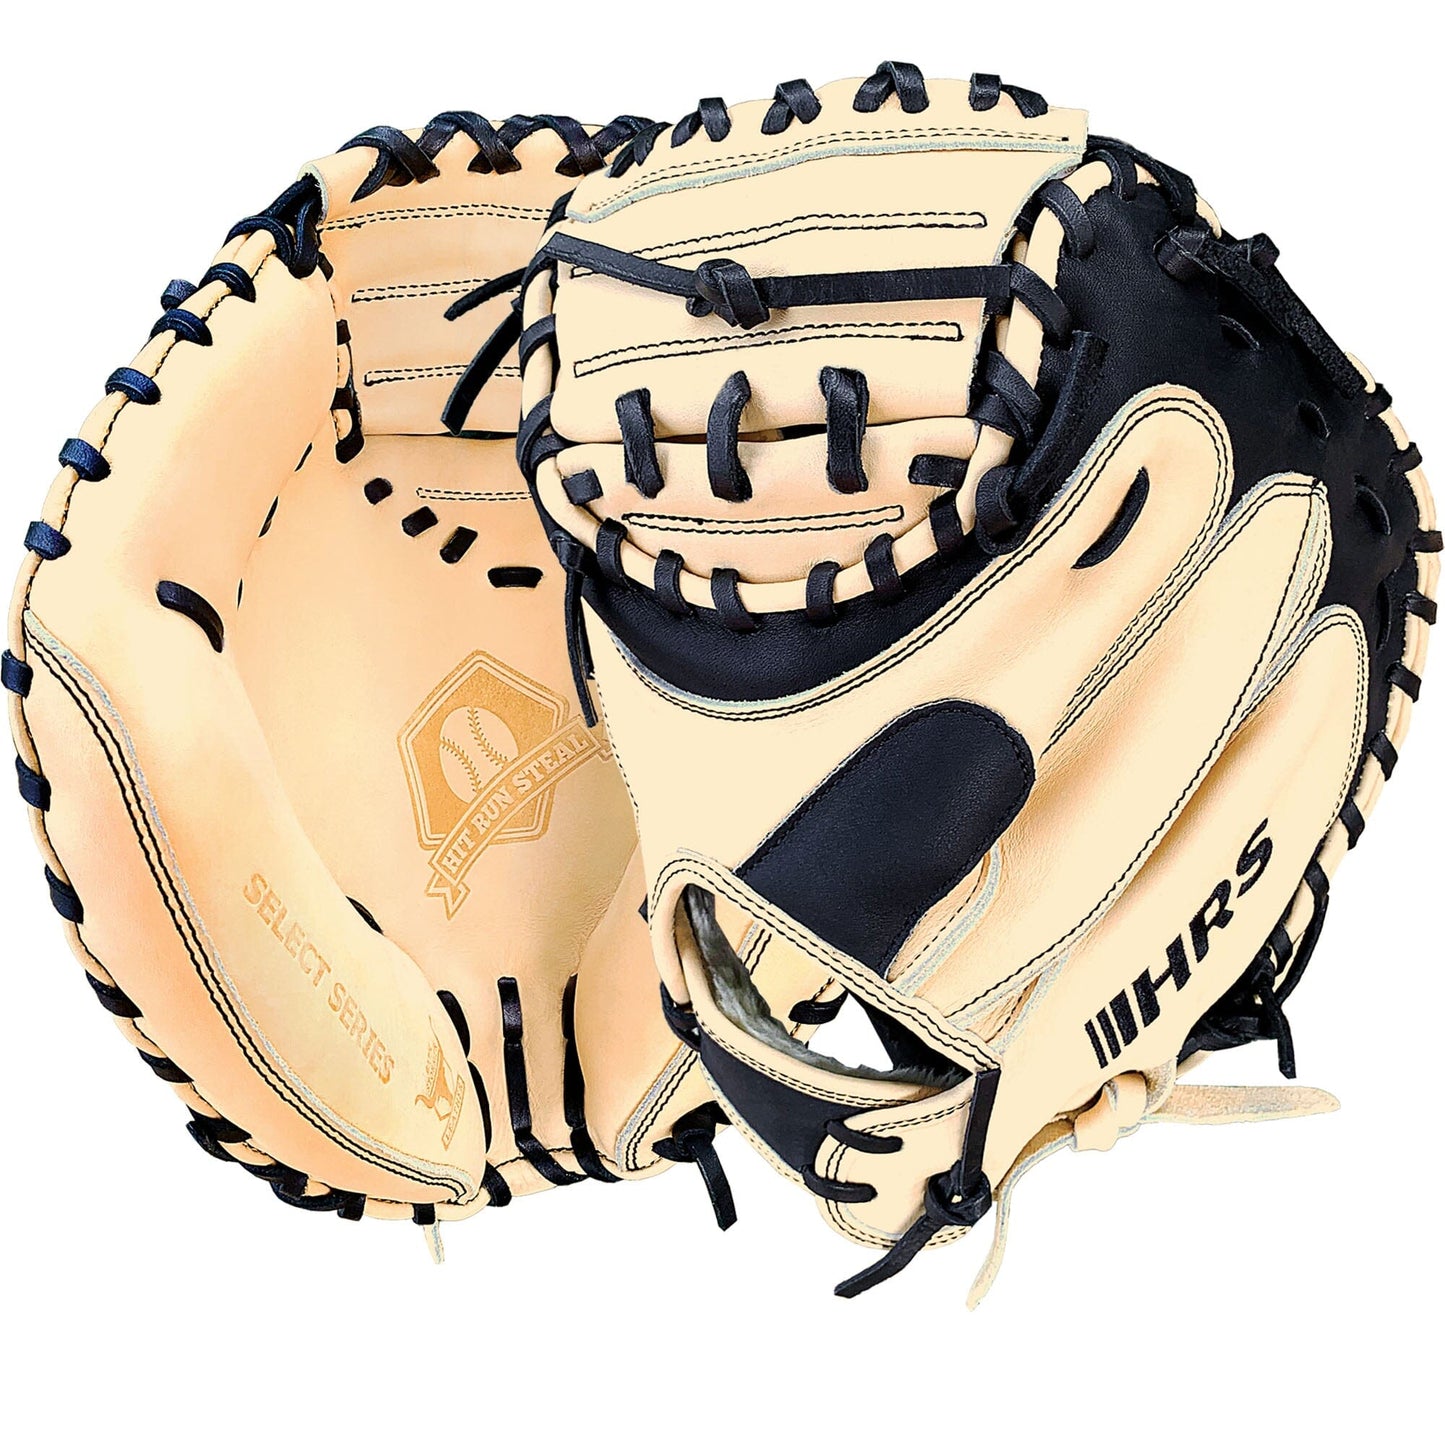 34" - Baseball Catcher's Mitt - Cream and Black